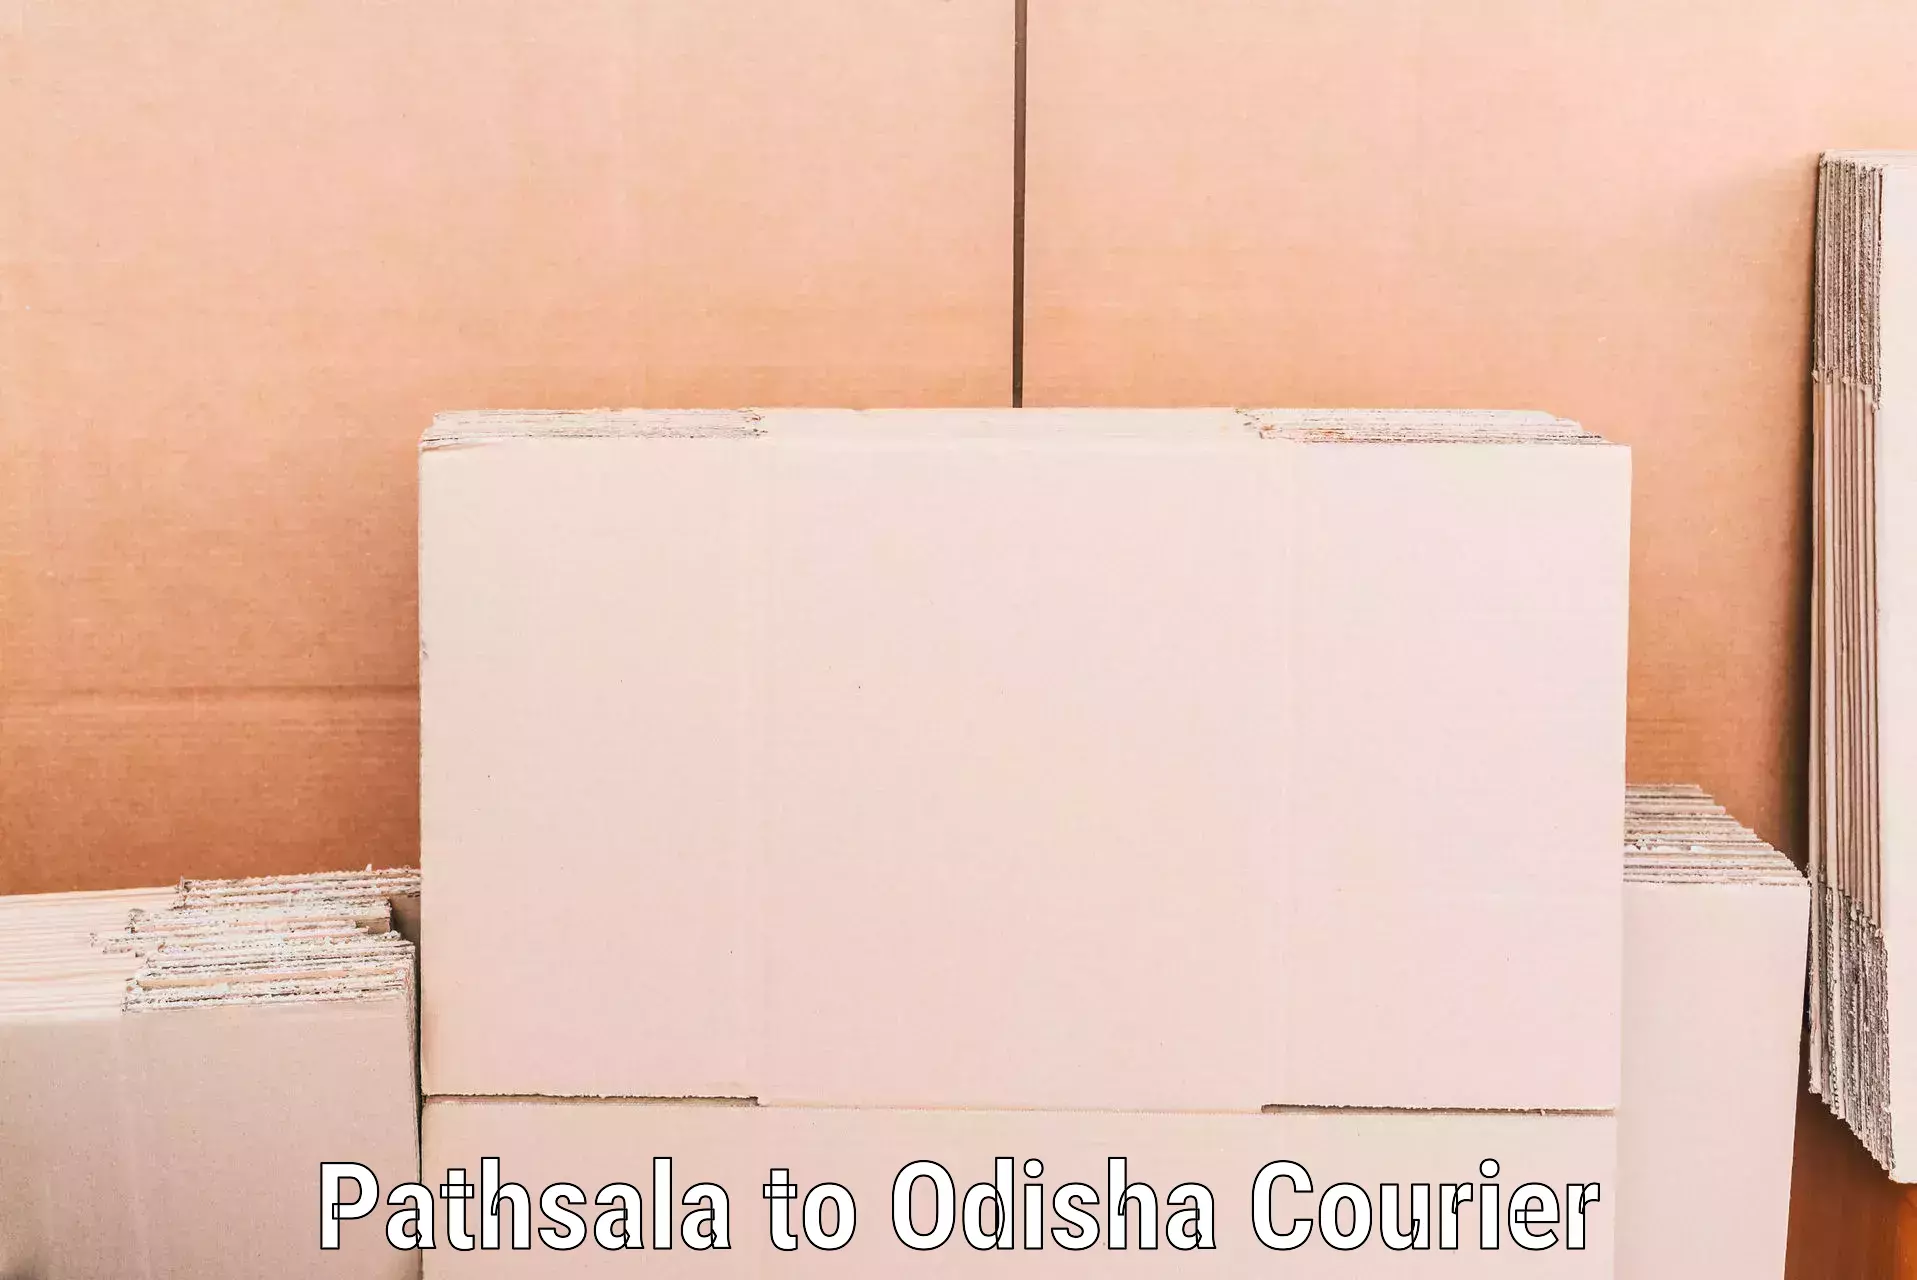 Furniture moving plans Pathsala to Jaipatna